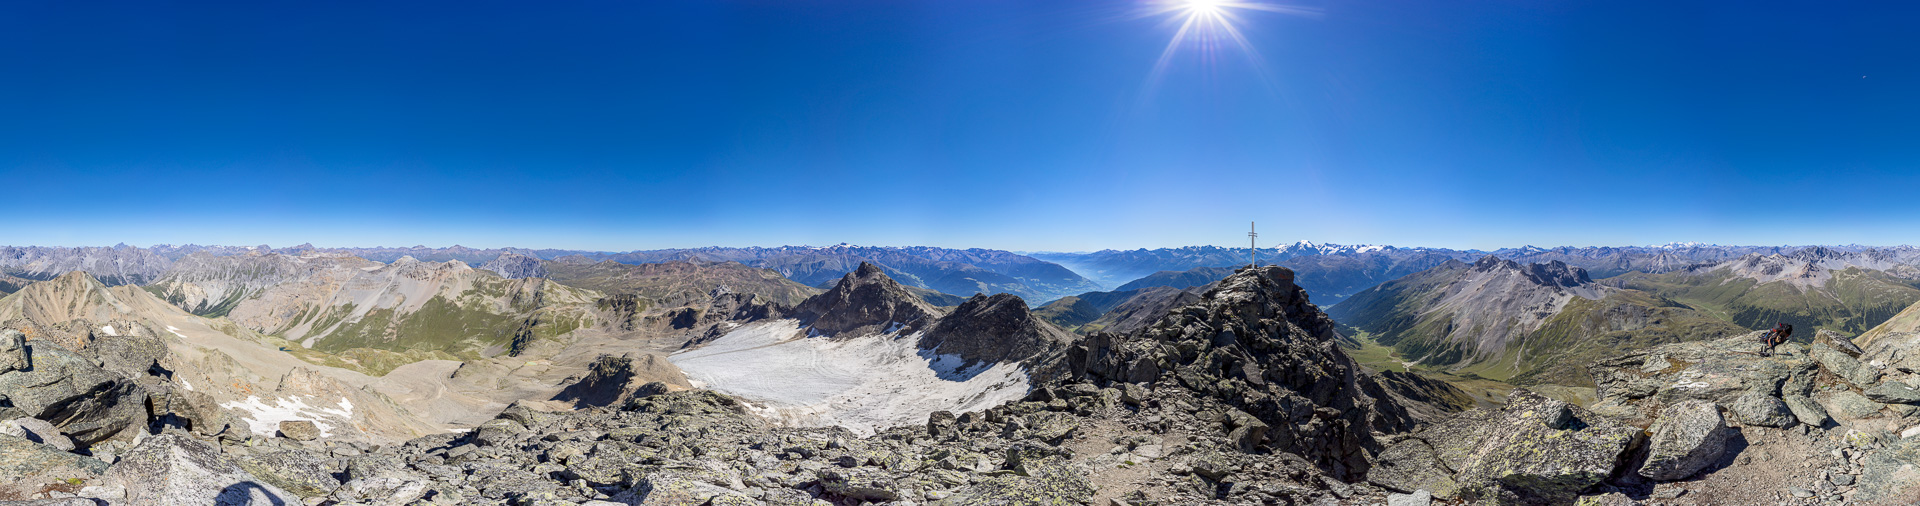 Prachtwetter und Prachtpanorama vom höchsten Gipfel der Sesvenna-Gruppe.